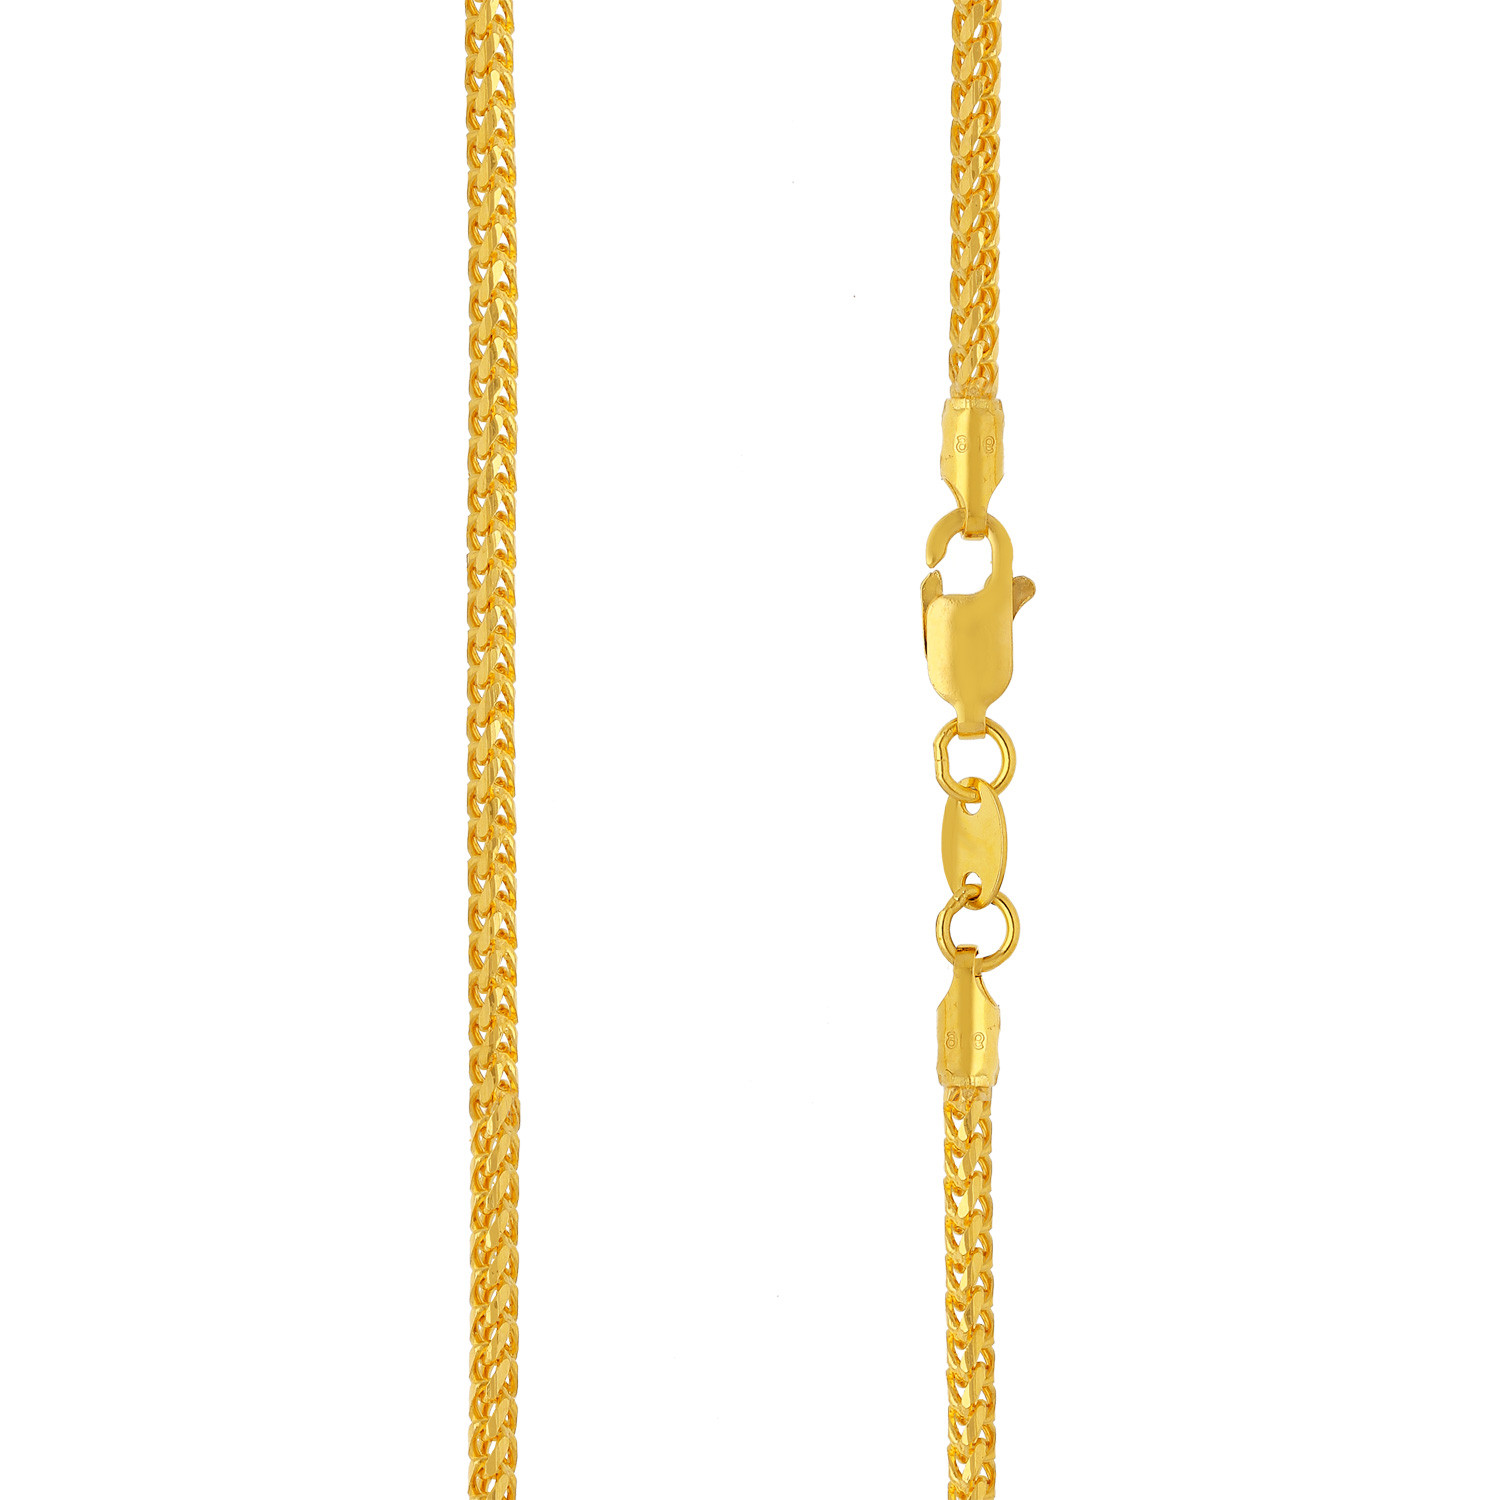 Malabar Gold Chain USAICHCFR60P16